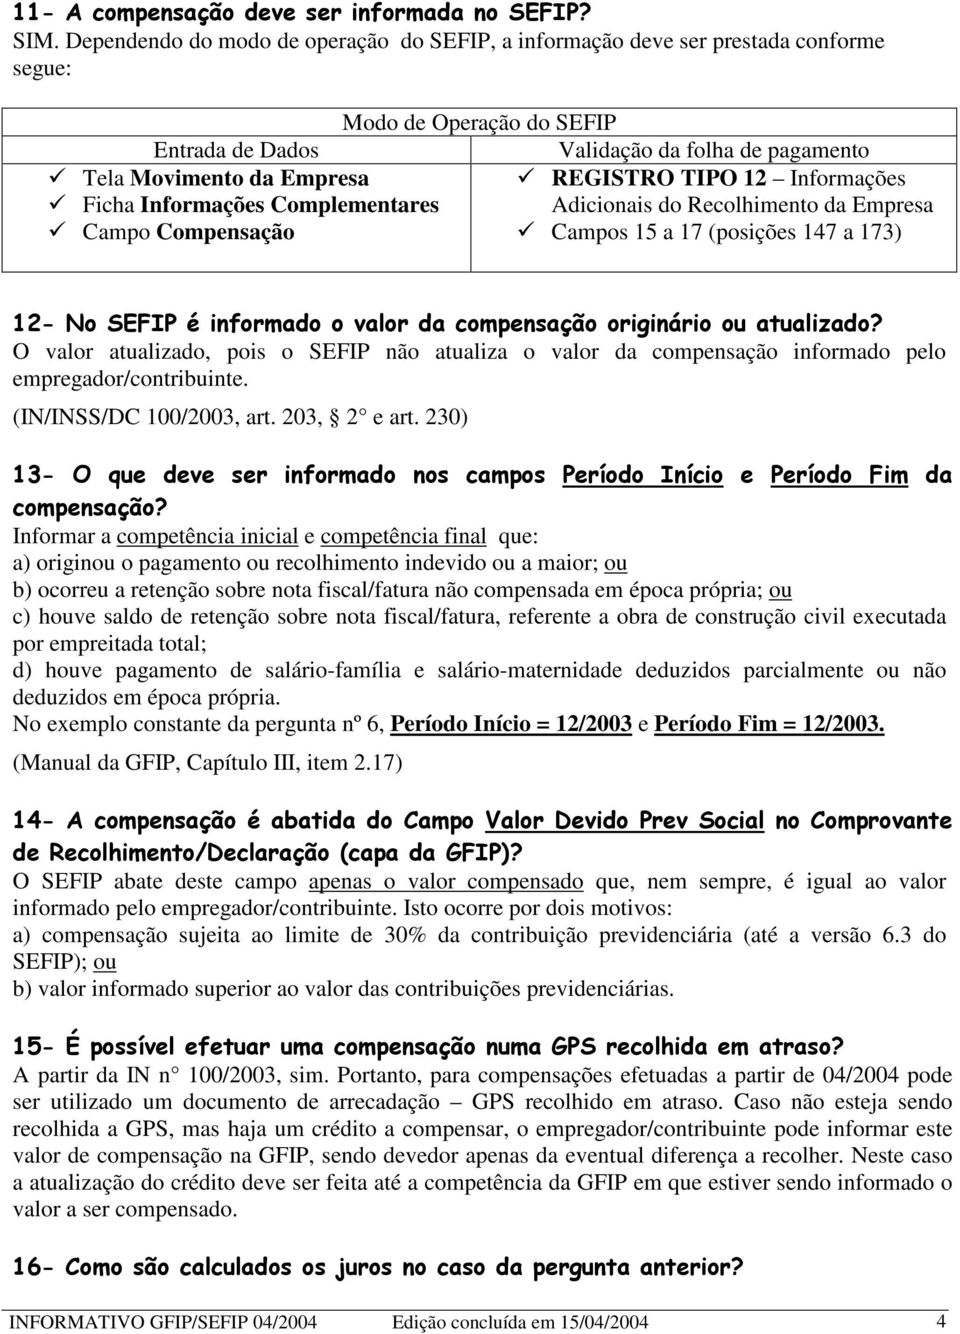 TIPO 12 Informações Ficha Informações Complementares Adicionais do Recolhimento da Empresa Campo Compensação Campos 15 a 17 (posições 147 a 173) ; +".